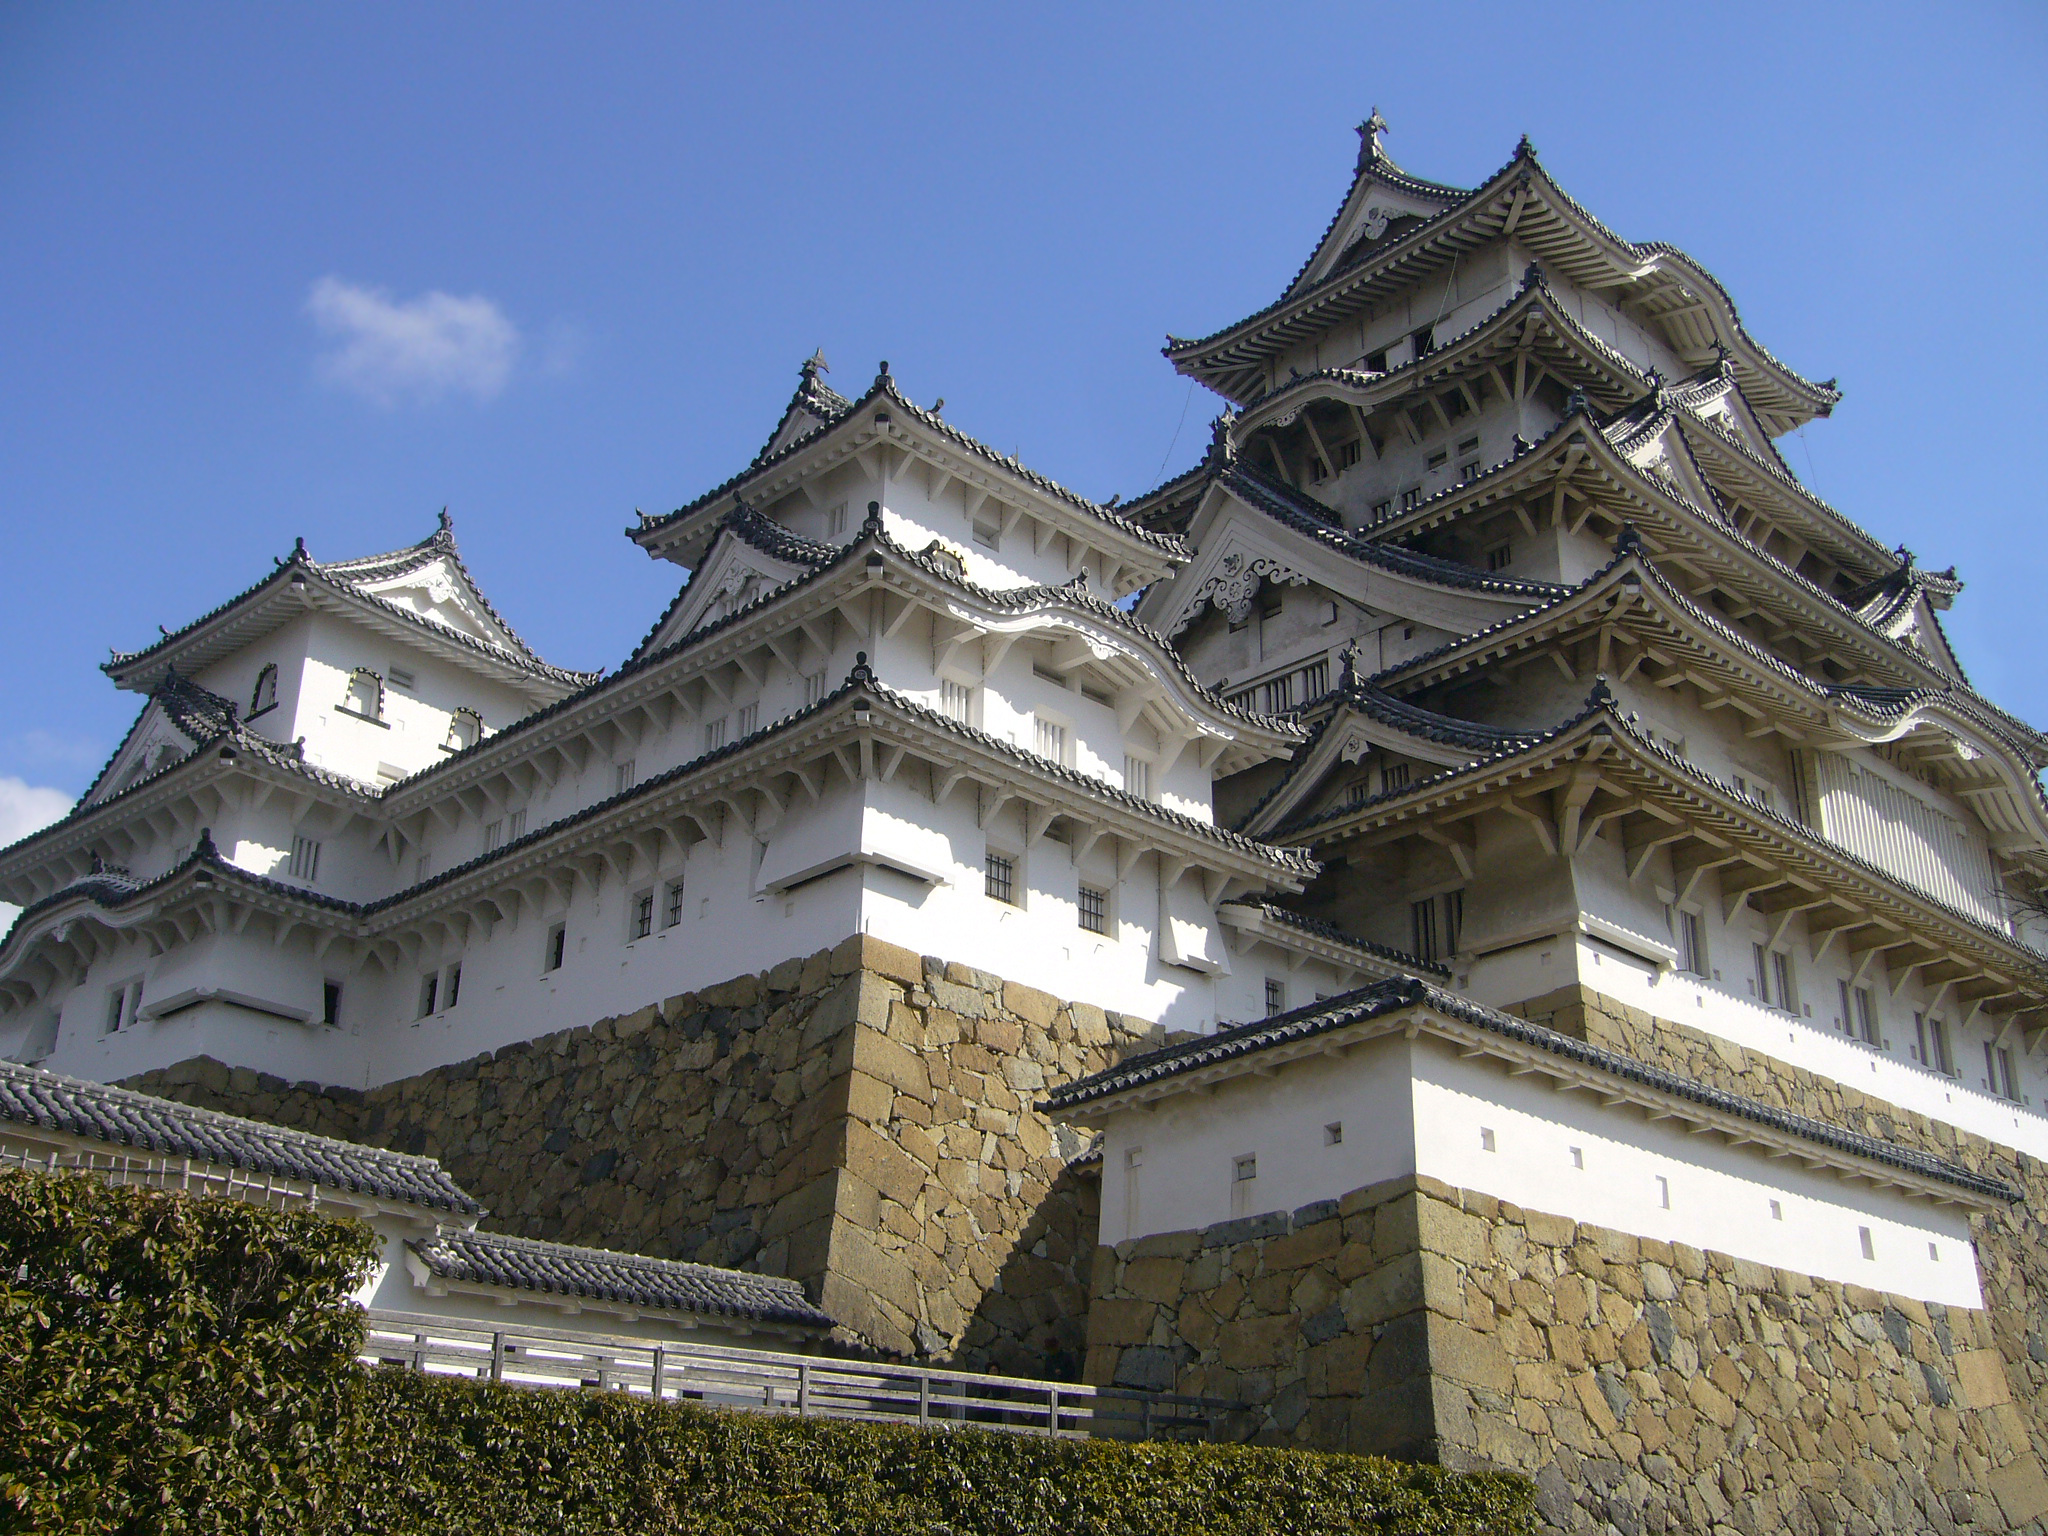 قلعة هيميجي - التاريخ والفضول